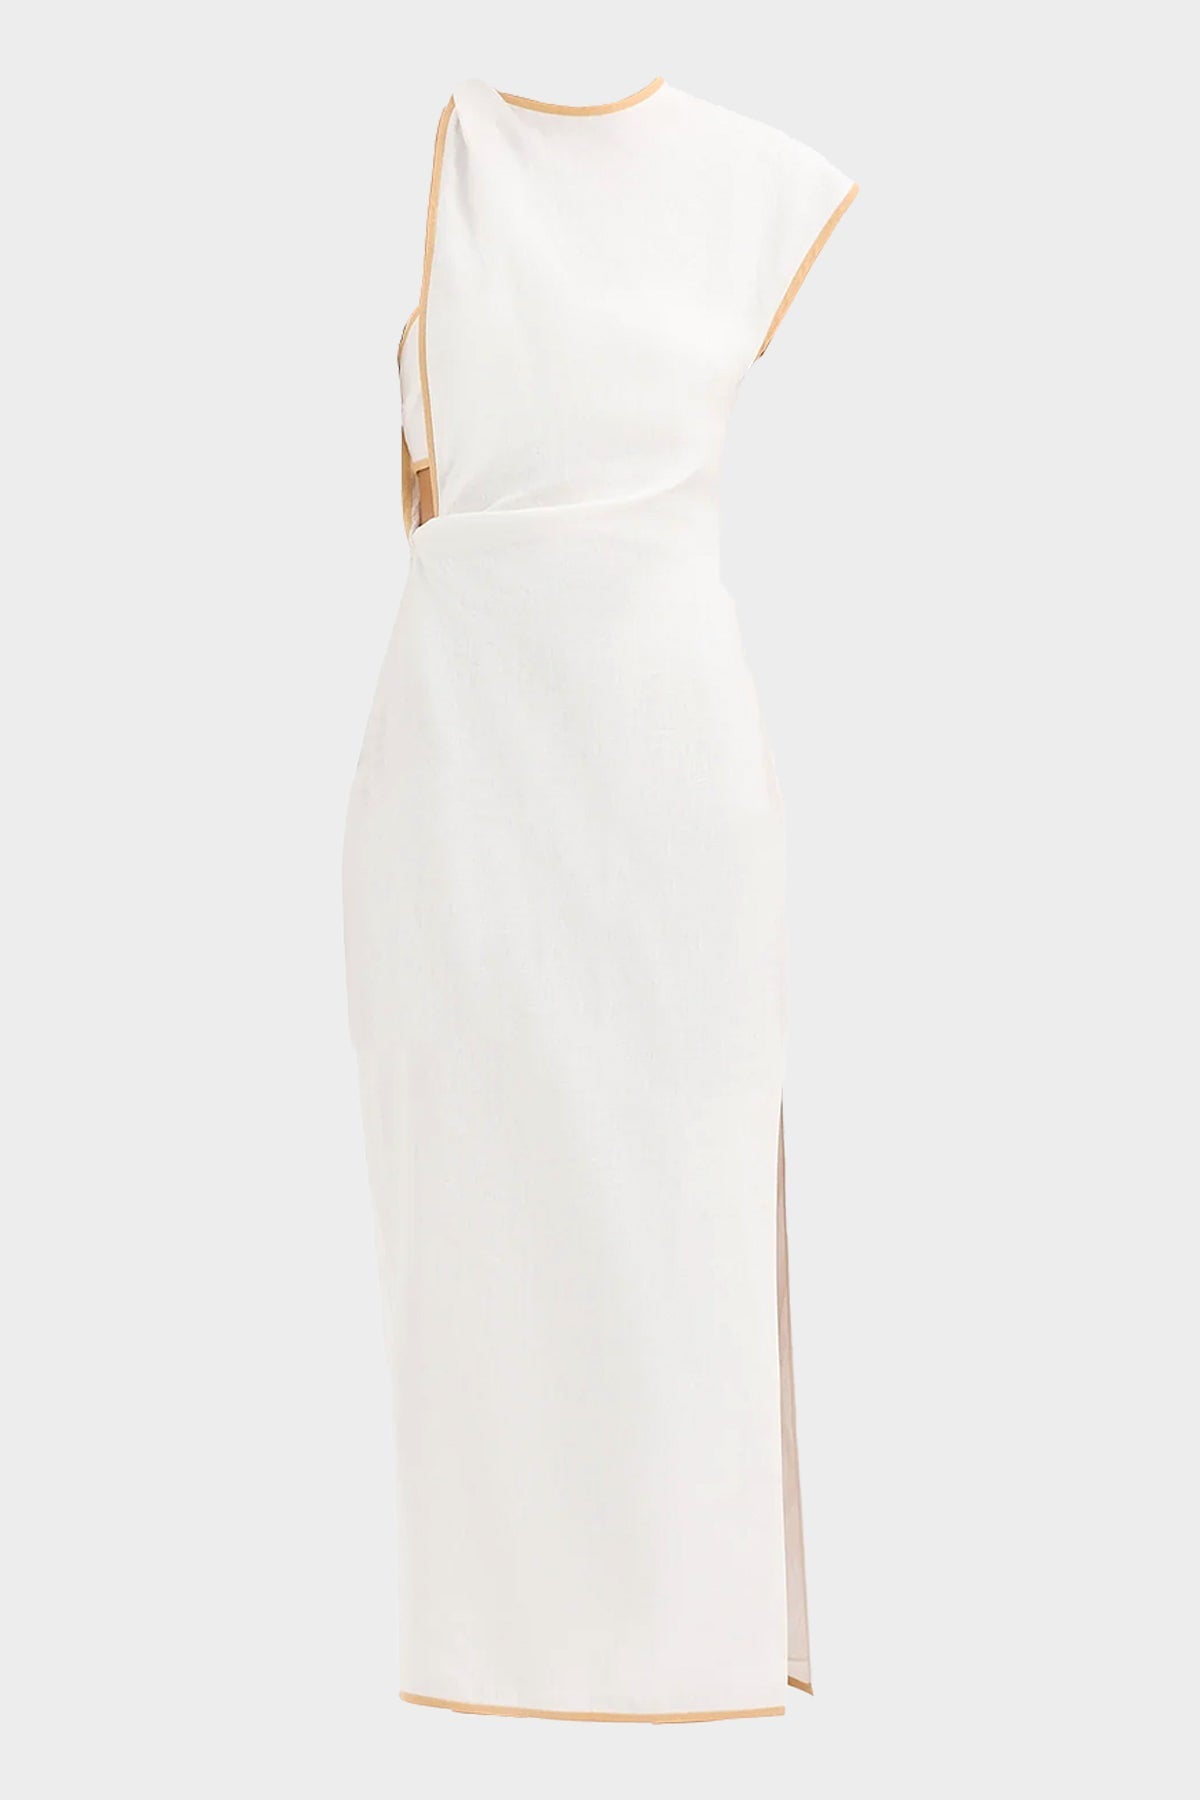 Noemi Cut-Out Midi Dress in Ivory - shop-olivia.com